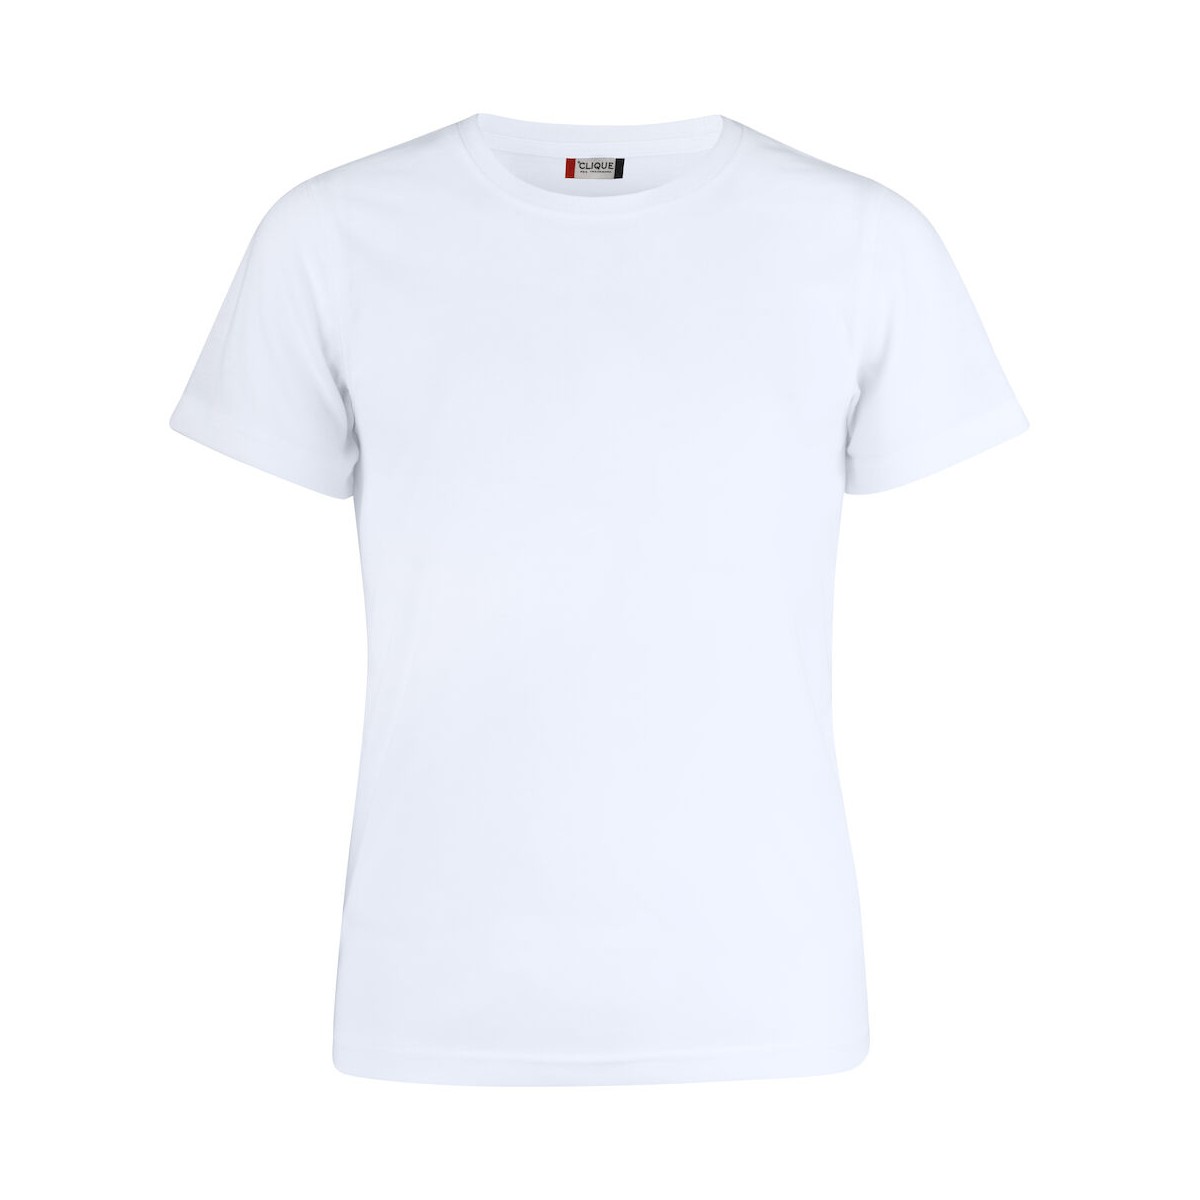 T-shirt en polyester - Clique - Personnalisable en petite quantité - Couleur blanc